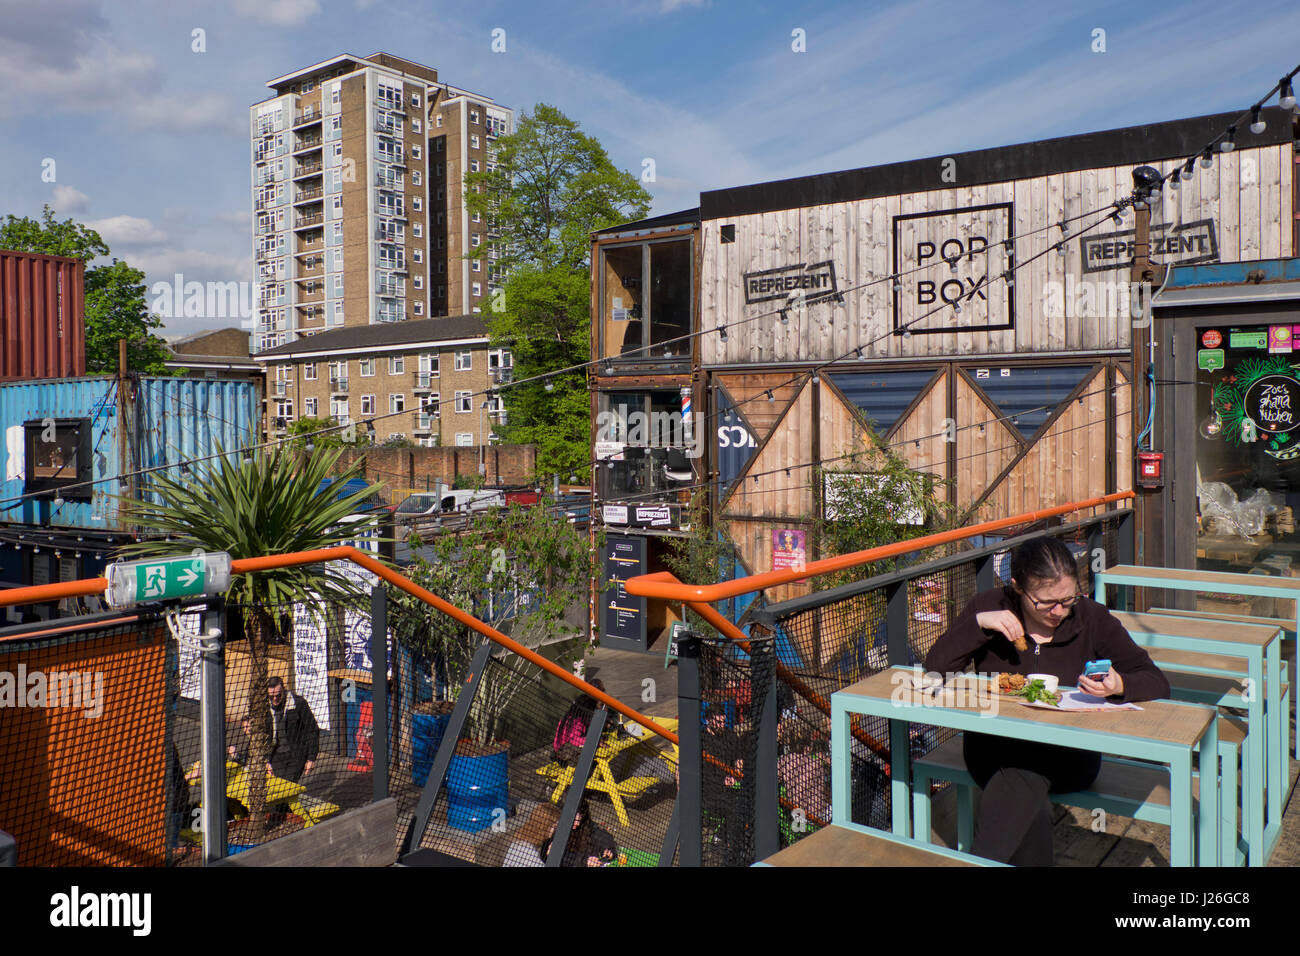 Persone sedersi al bar e ristoranti del Pop Brixton cibo e arte enclave, fatta di contenitori.Brixton,Londra,UK Foto Stock